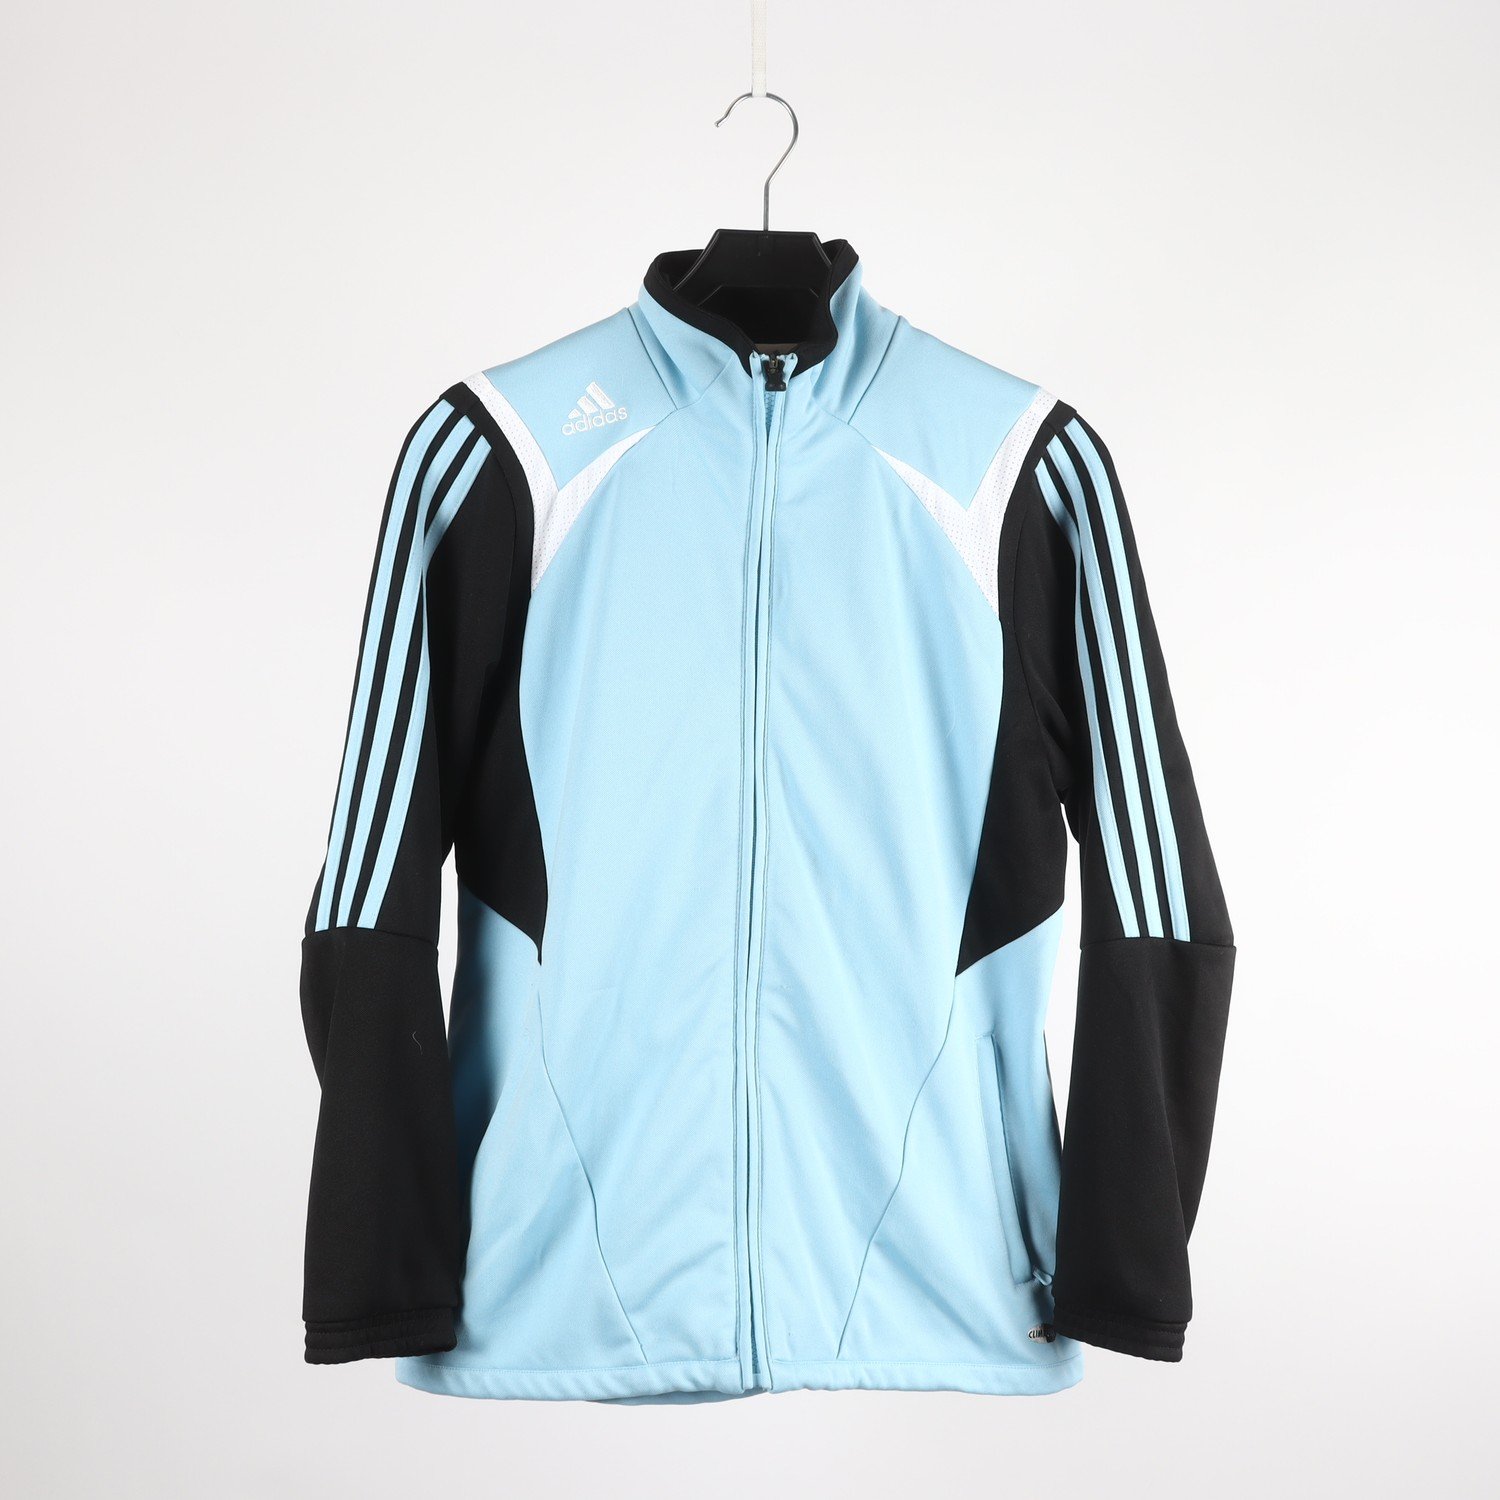 Sportjacka, Adidas, ljusblå/svart, stl. M